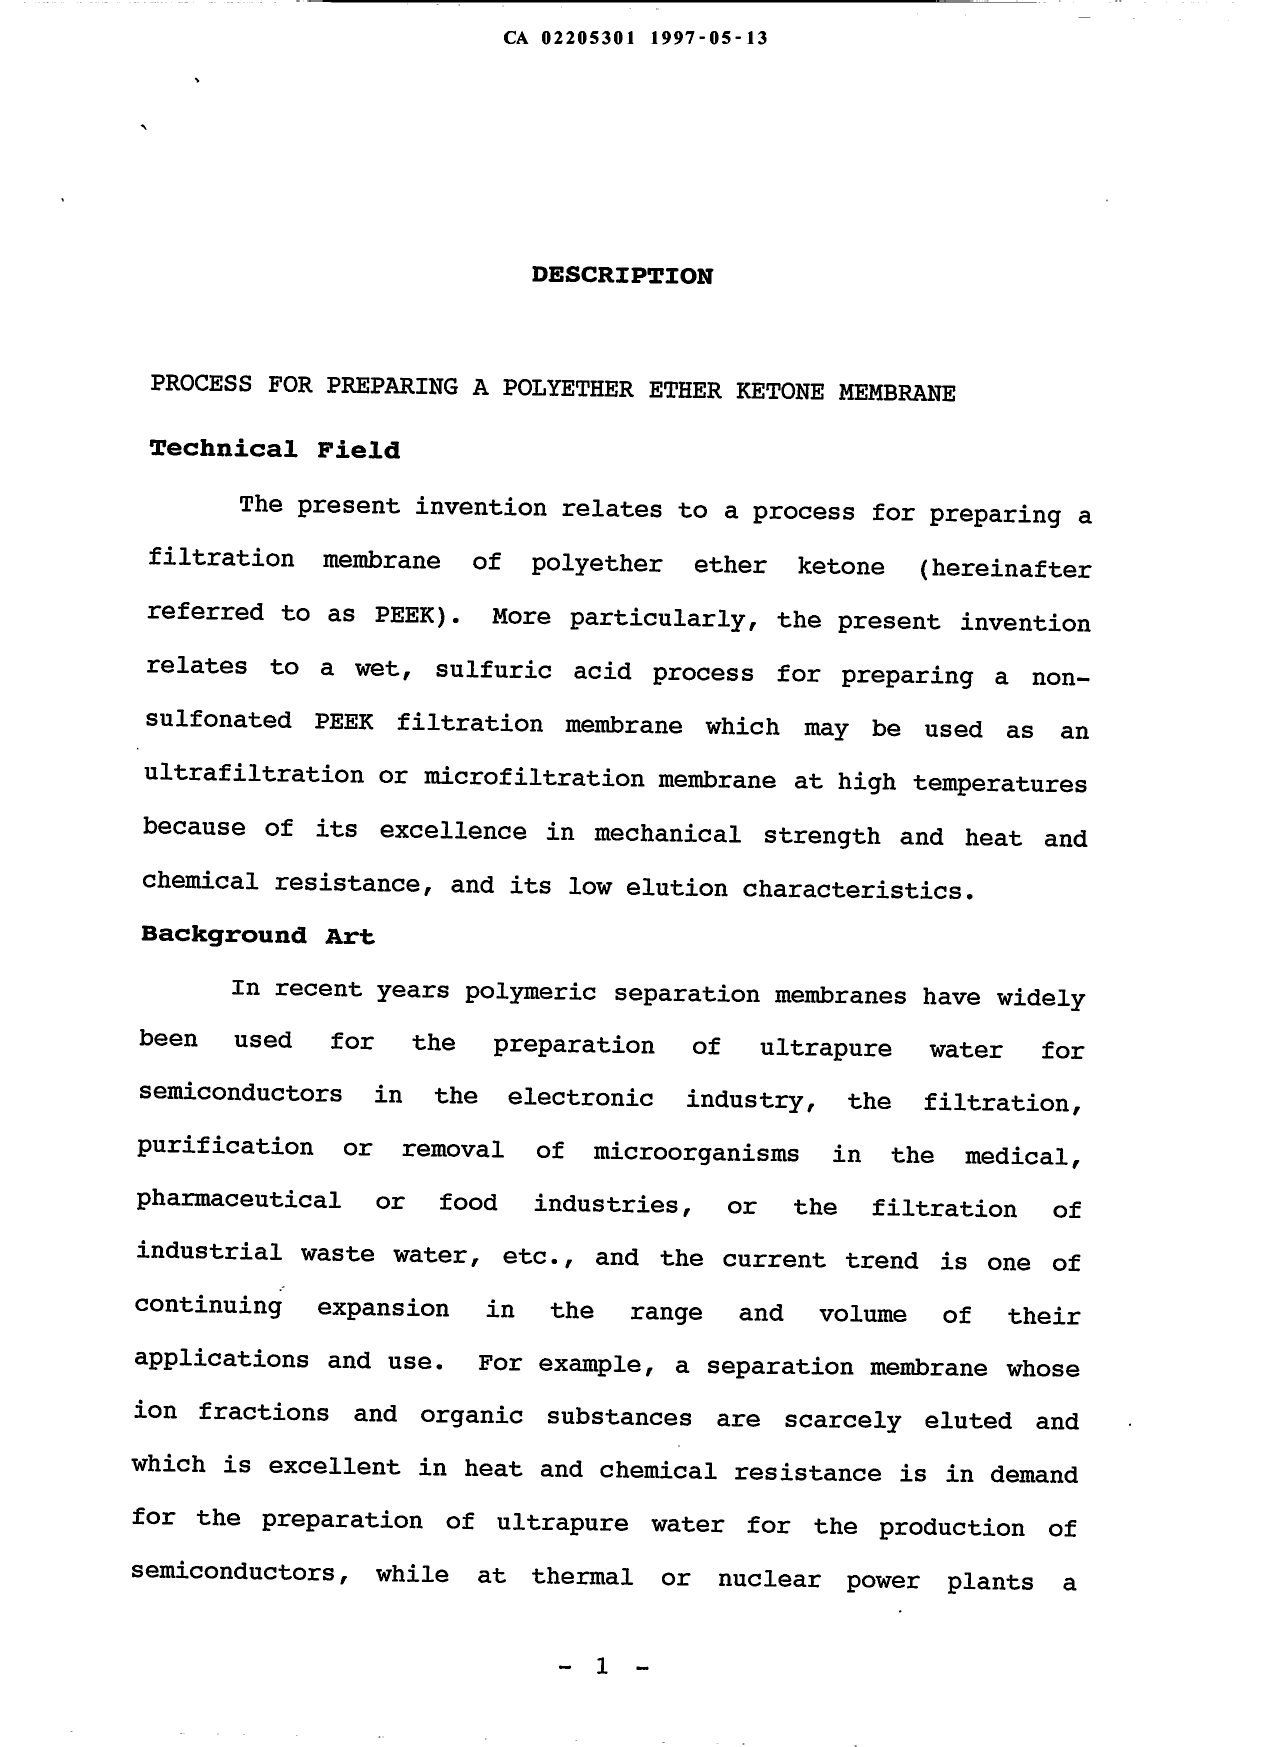 Document de brevet canadien 2205301. Description 19970513. Image 1 de 54